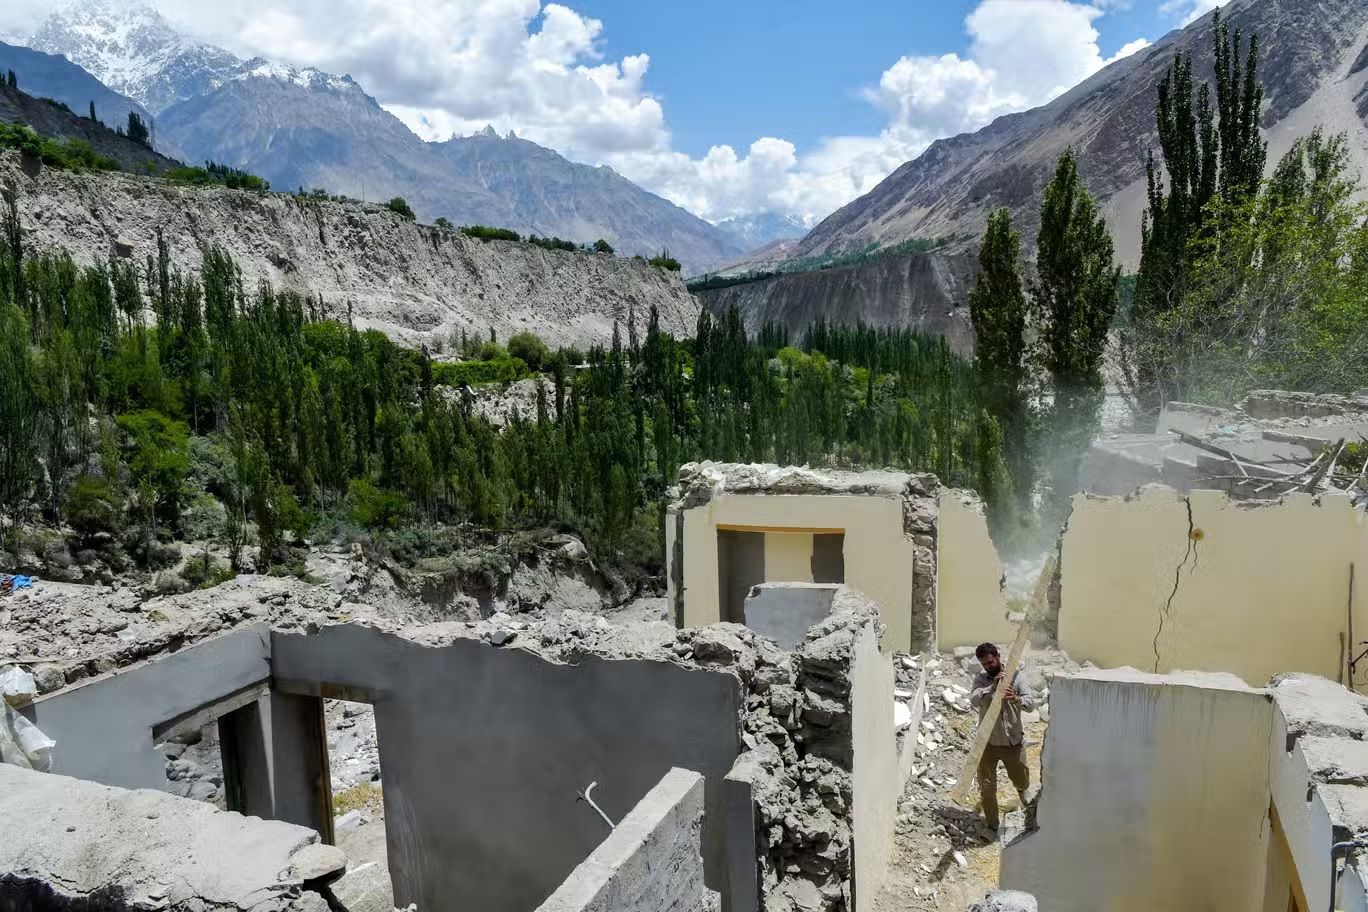 مواطن يزيل حطام منزل متضرر بعد انفجار بحيرة بسبب ذوبان نهر جليدي في قرية حسن آباد في منطقة غلغيت بالتستان الباكستانية في يونيو من العام الحالي (غيتي)